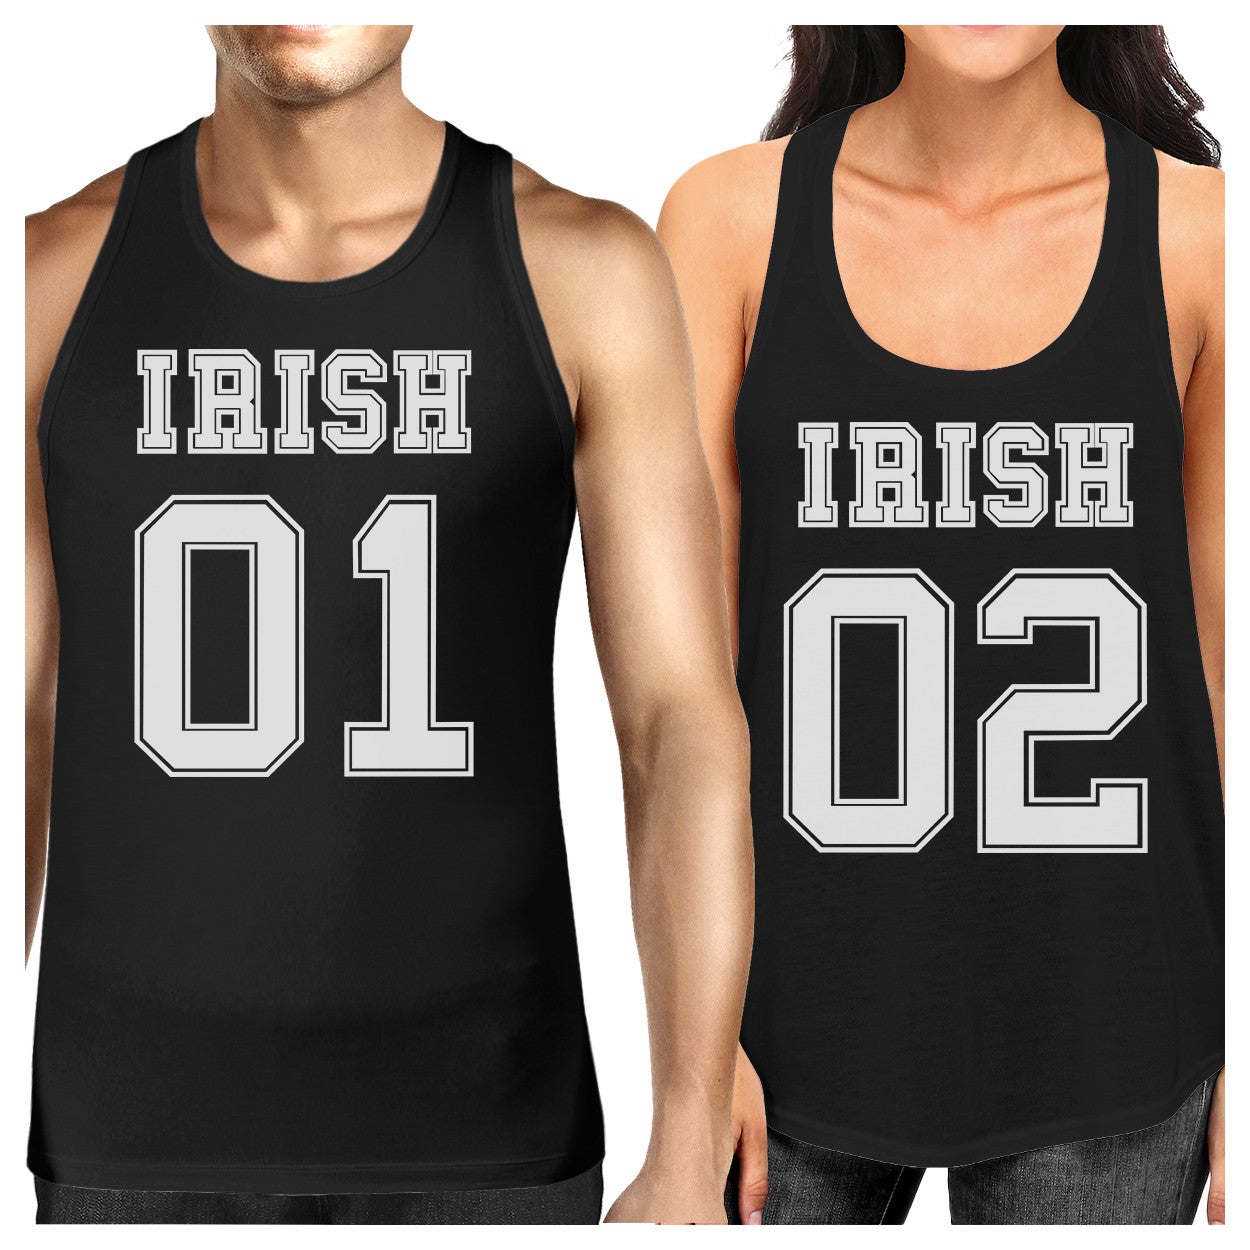 Irish 01 Irish 02 Cute Couples Matching Tanks For St Patricks Day - 365 In Love